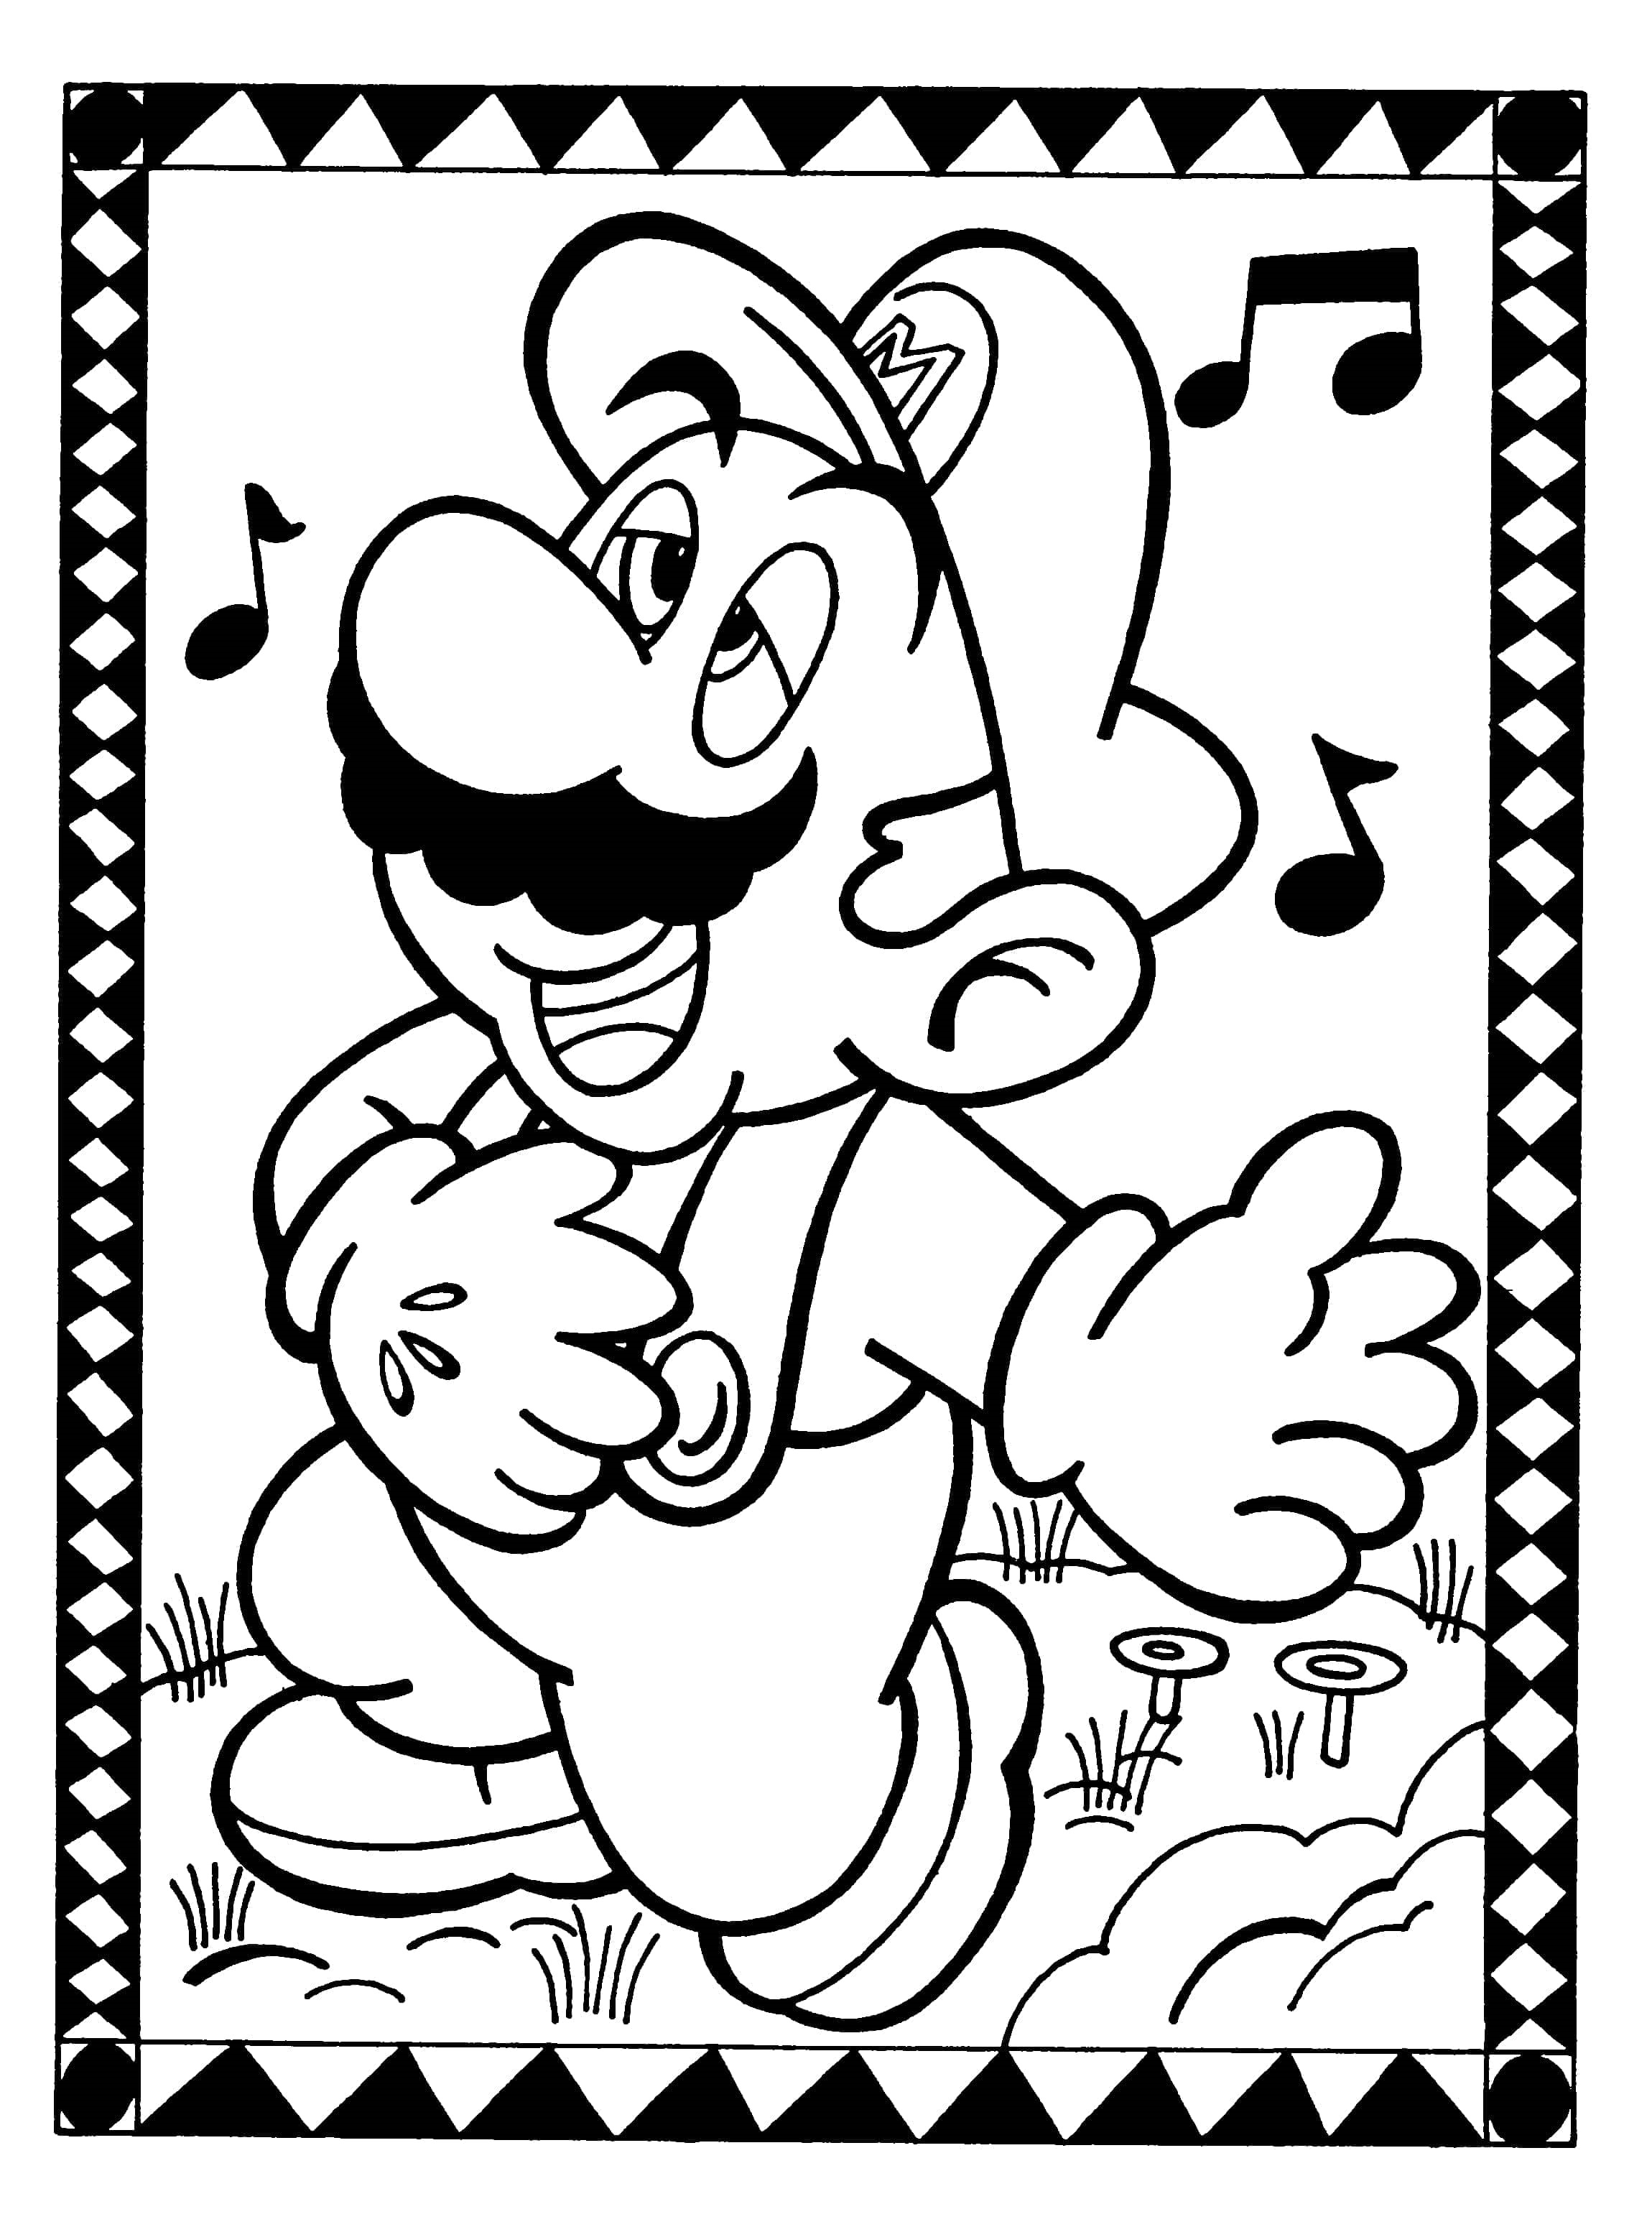 Dibujo 29 de Super Mario para imprimir y colorear